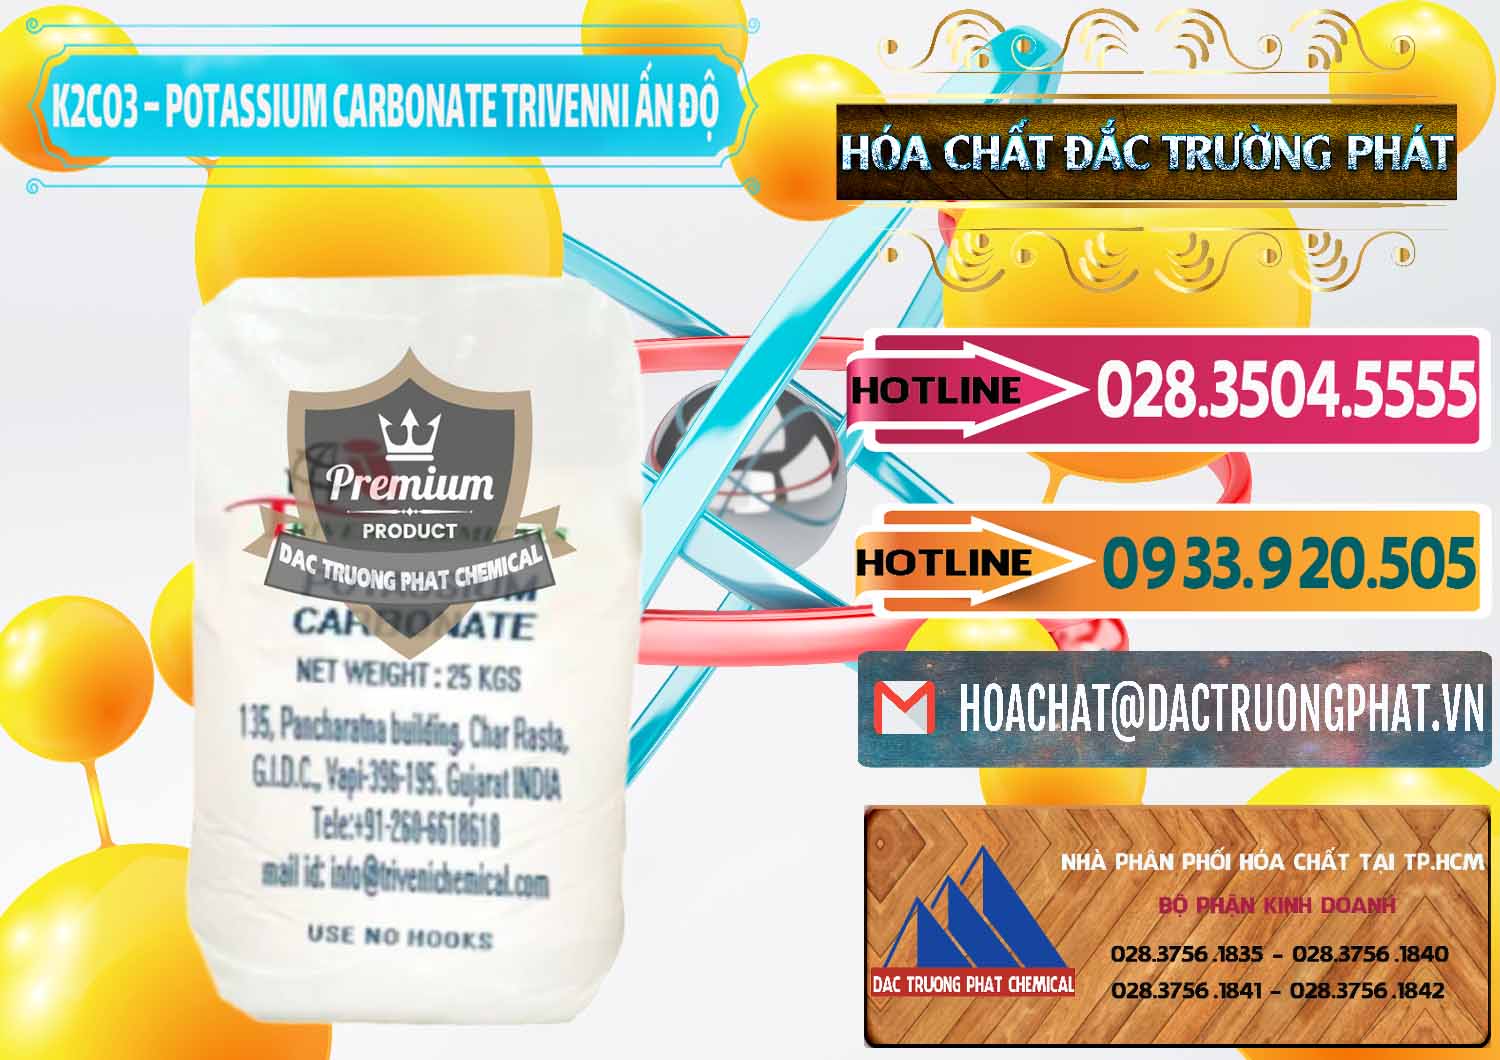 Đơn vị bán và cung ứng K2Co3 – Potassium Carbonate Trivenni Ấn Độ India - 0473 - Đơn vị chuyên kinh doanh ( cung cấp ) hóa chất tại TP.HCM - dactruongphat.vn